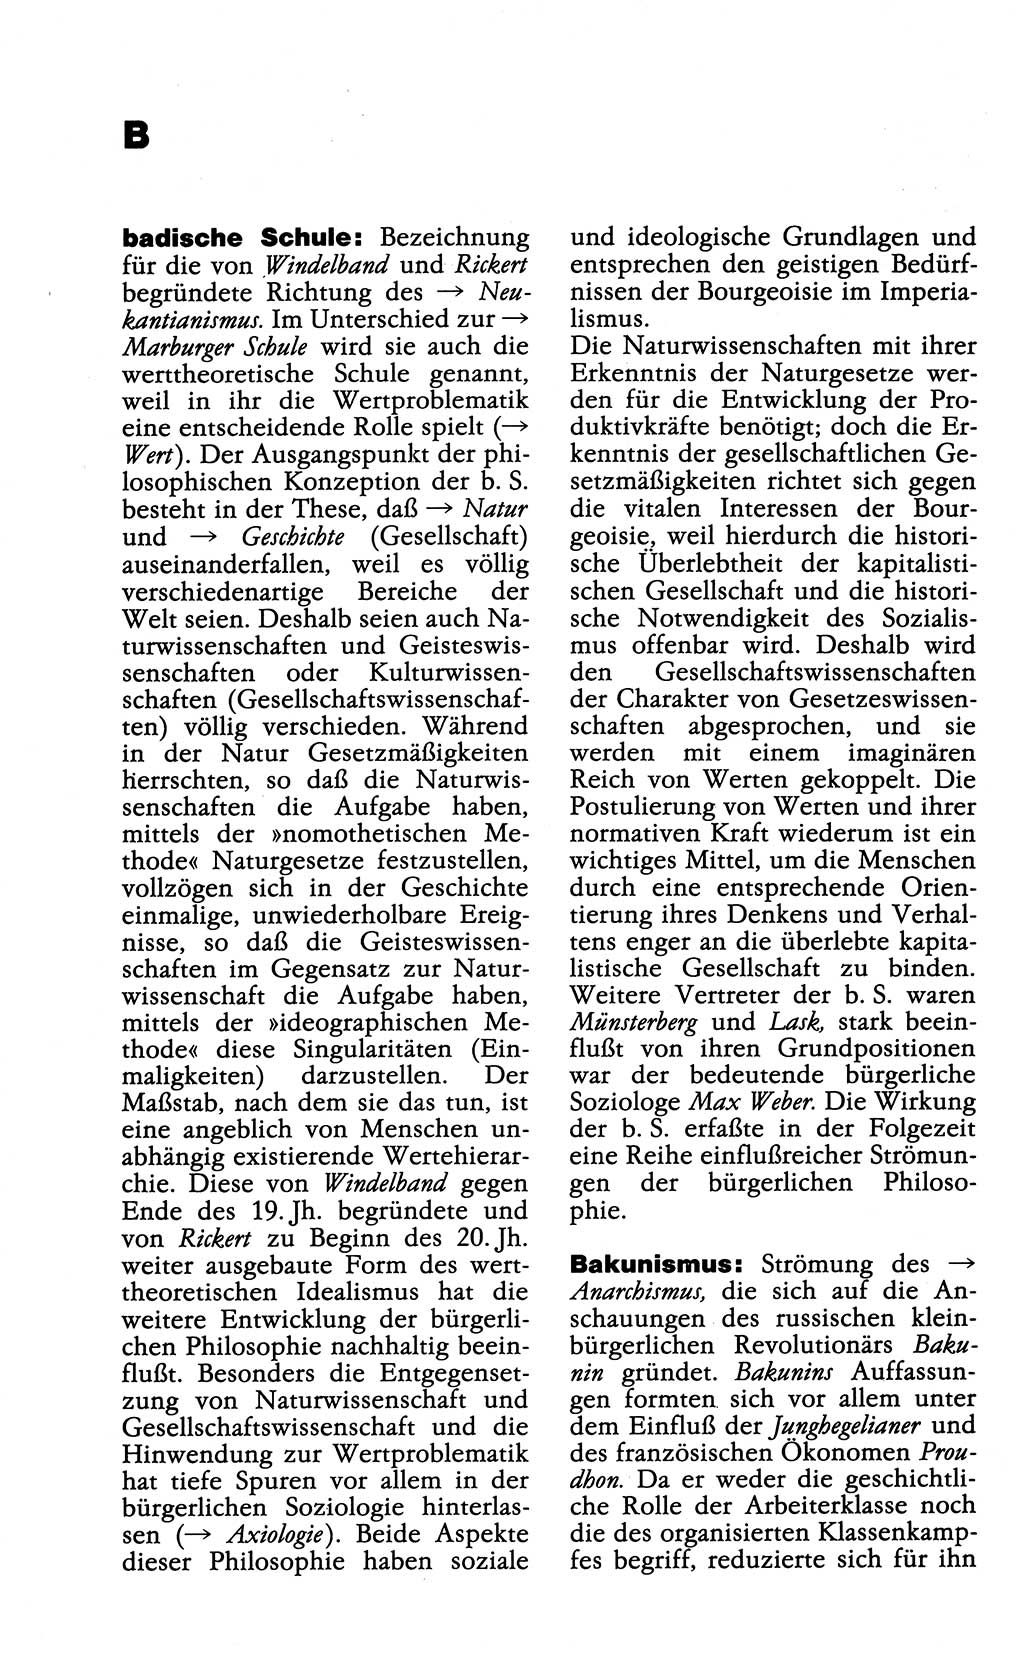 Wörterbuch der marxistisch-leninistischen Philosophie [Deutsche Demokratische Republik (DDR)] 1985, Seite 66 (Wb. ML Phil. DDR 1985, S. 66)